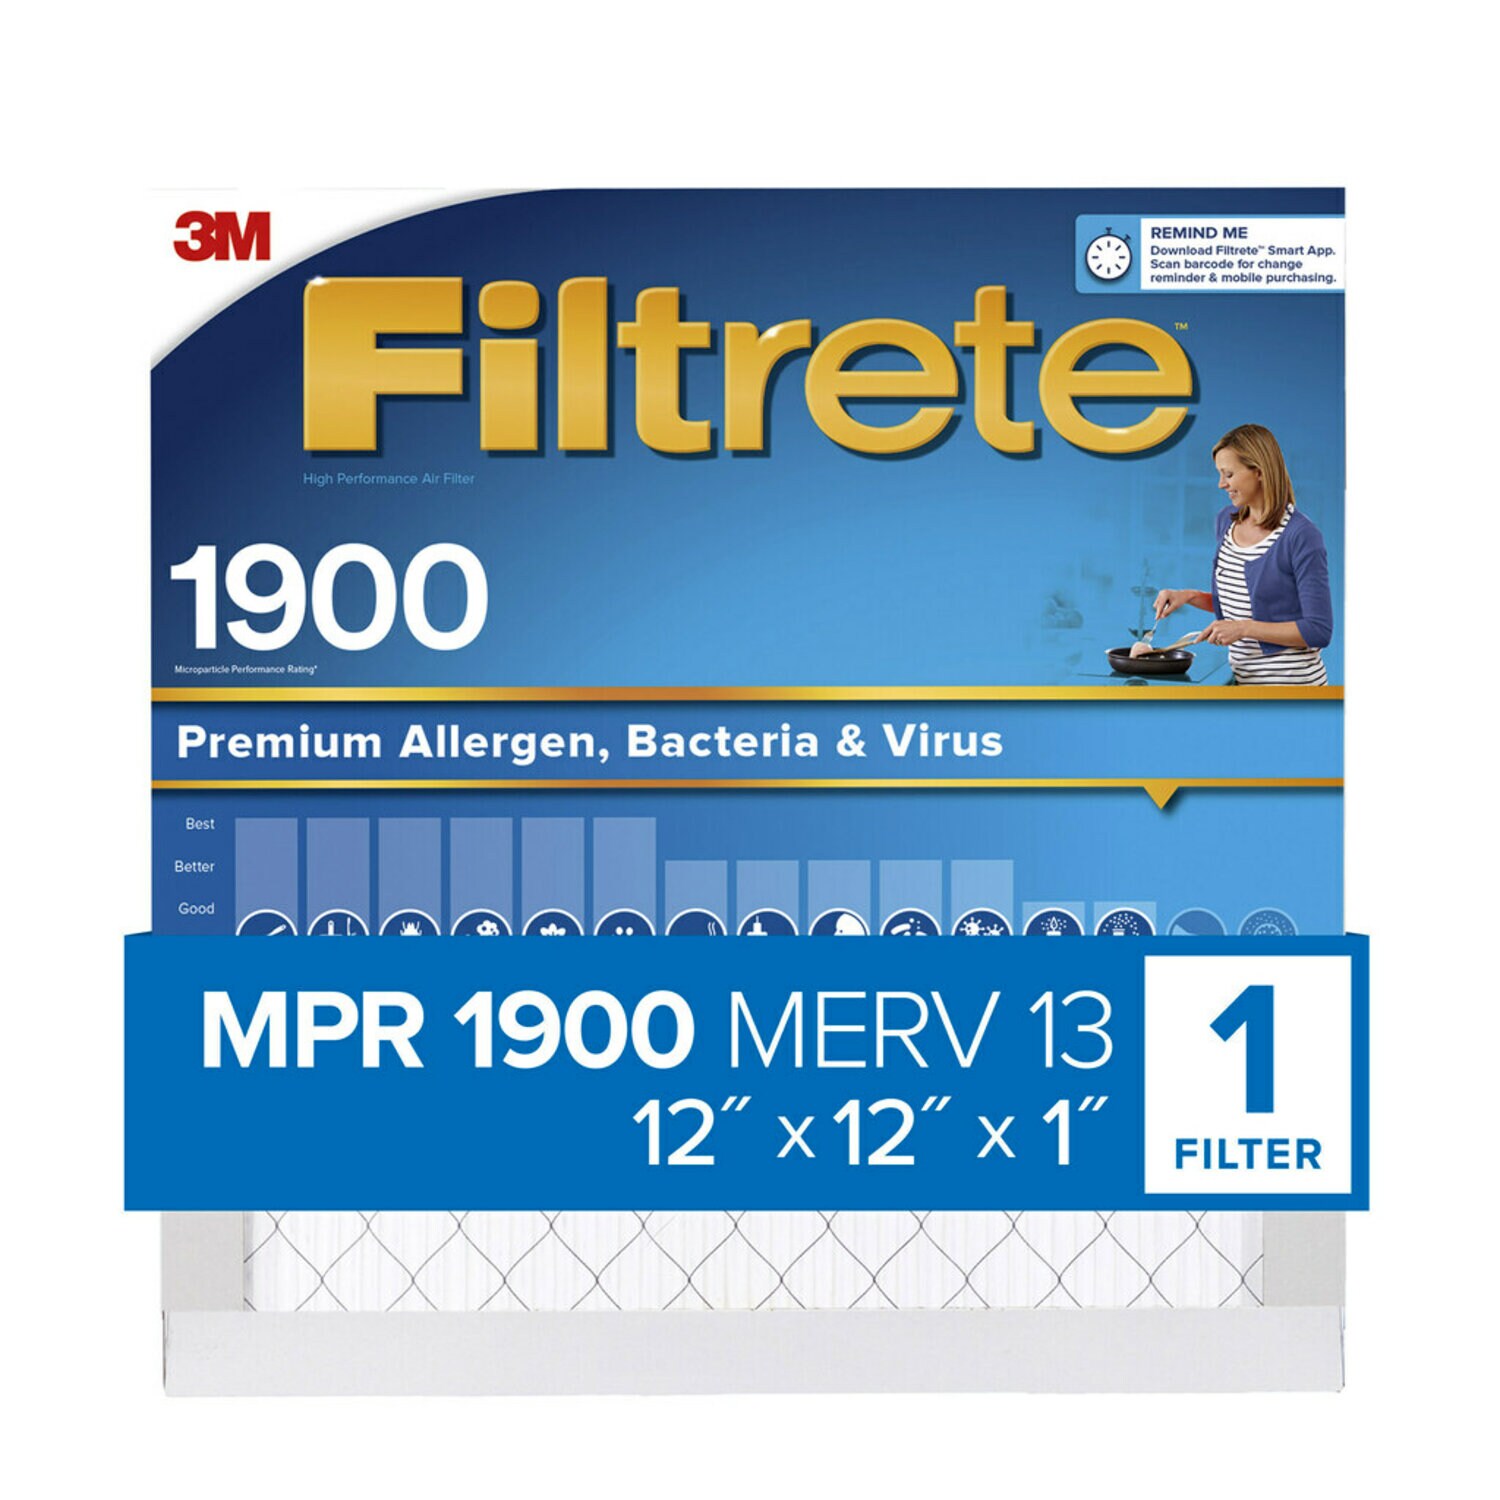 7100268043 - Filtrete High Performance Air Filter 1900 MPR UA10DC-6, 12 in x 12 in x 1 in (30.4 cm x 30.4 cm x 2.5 cm)